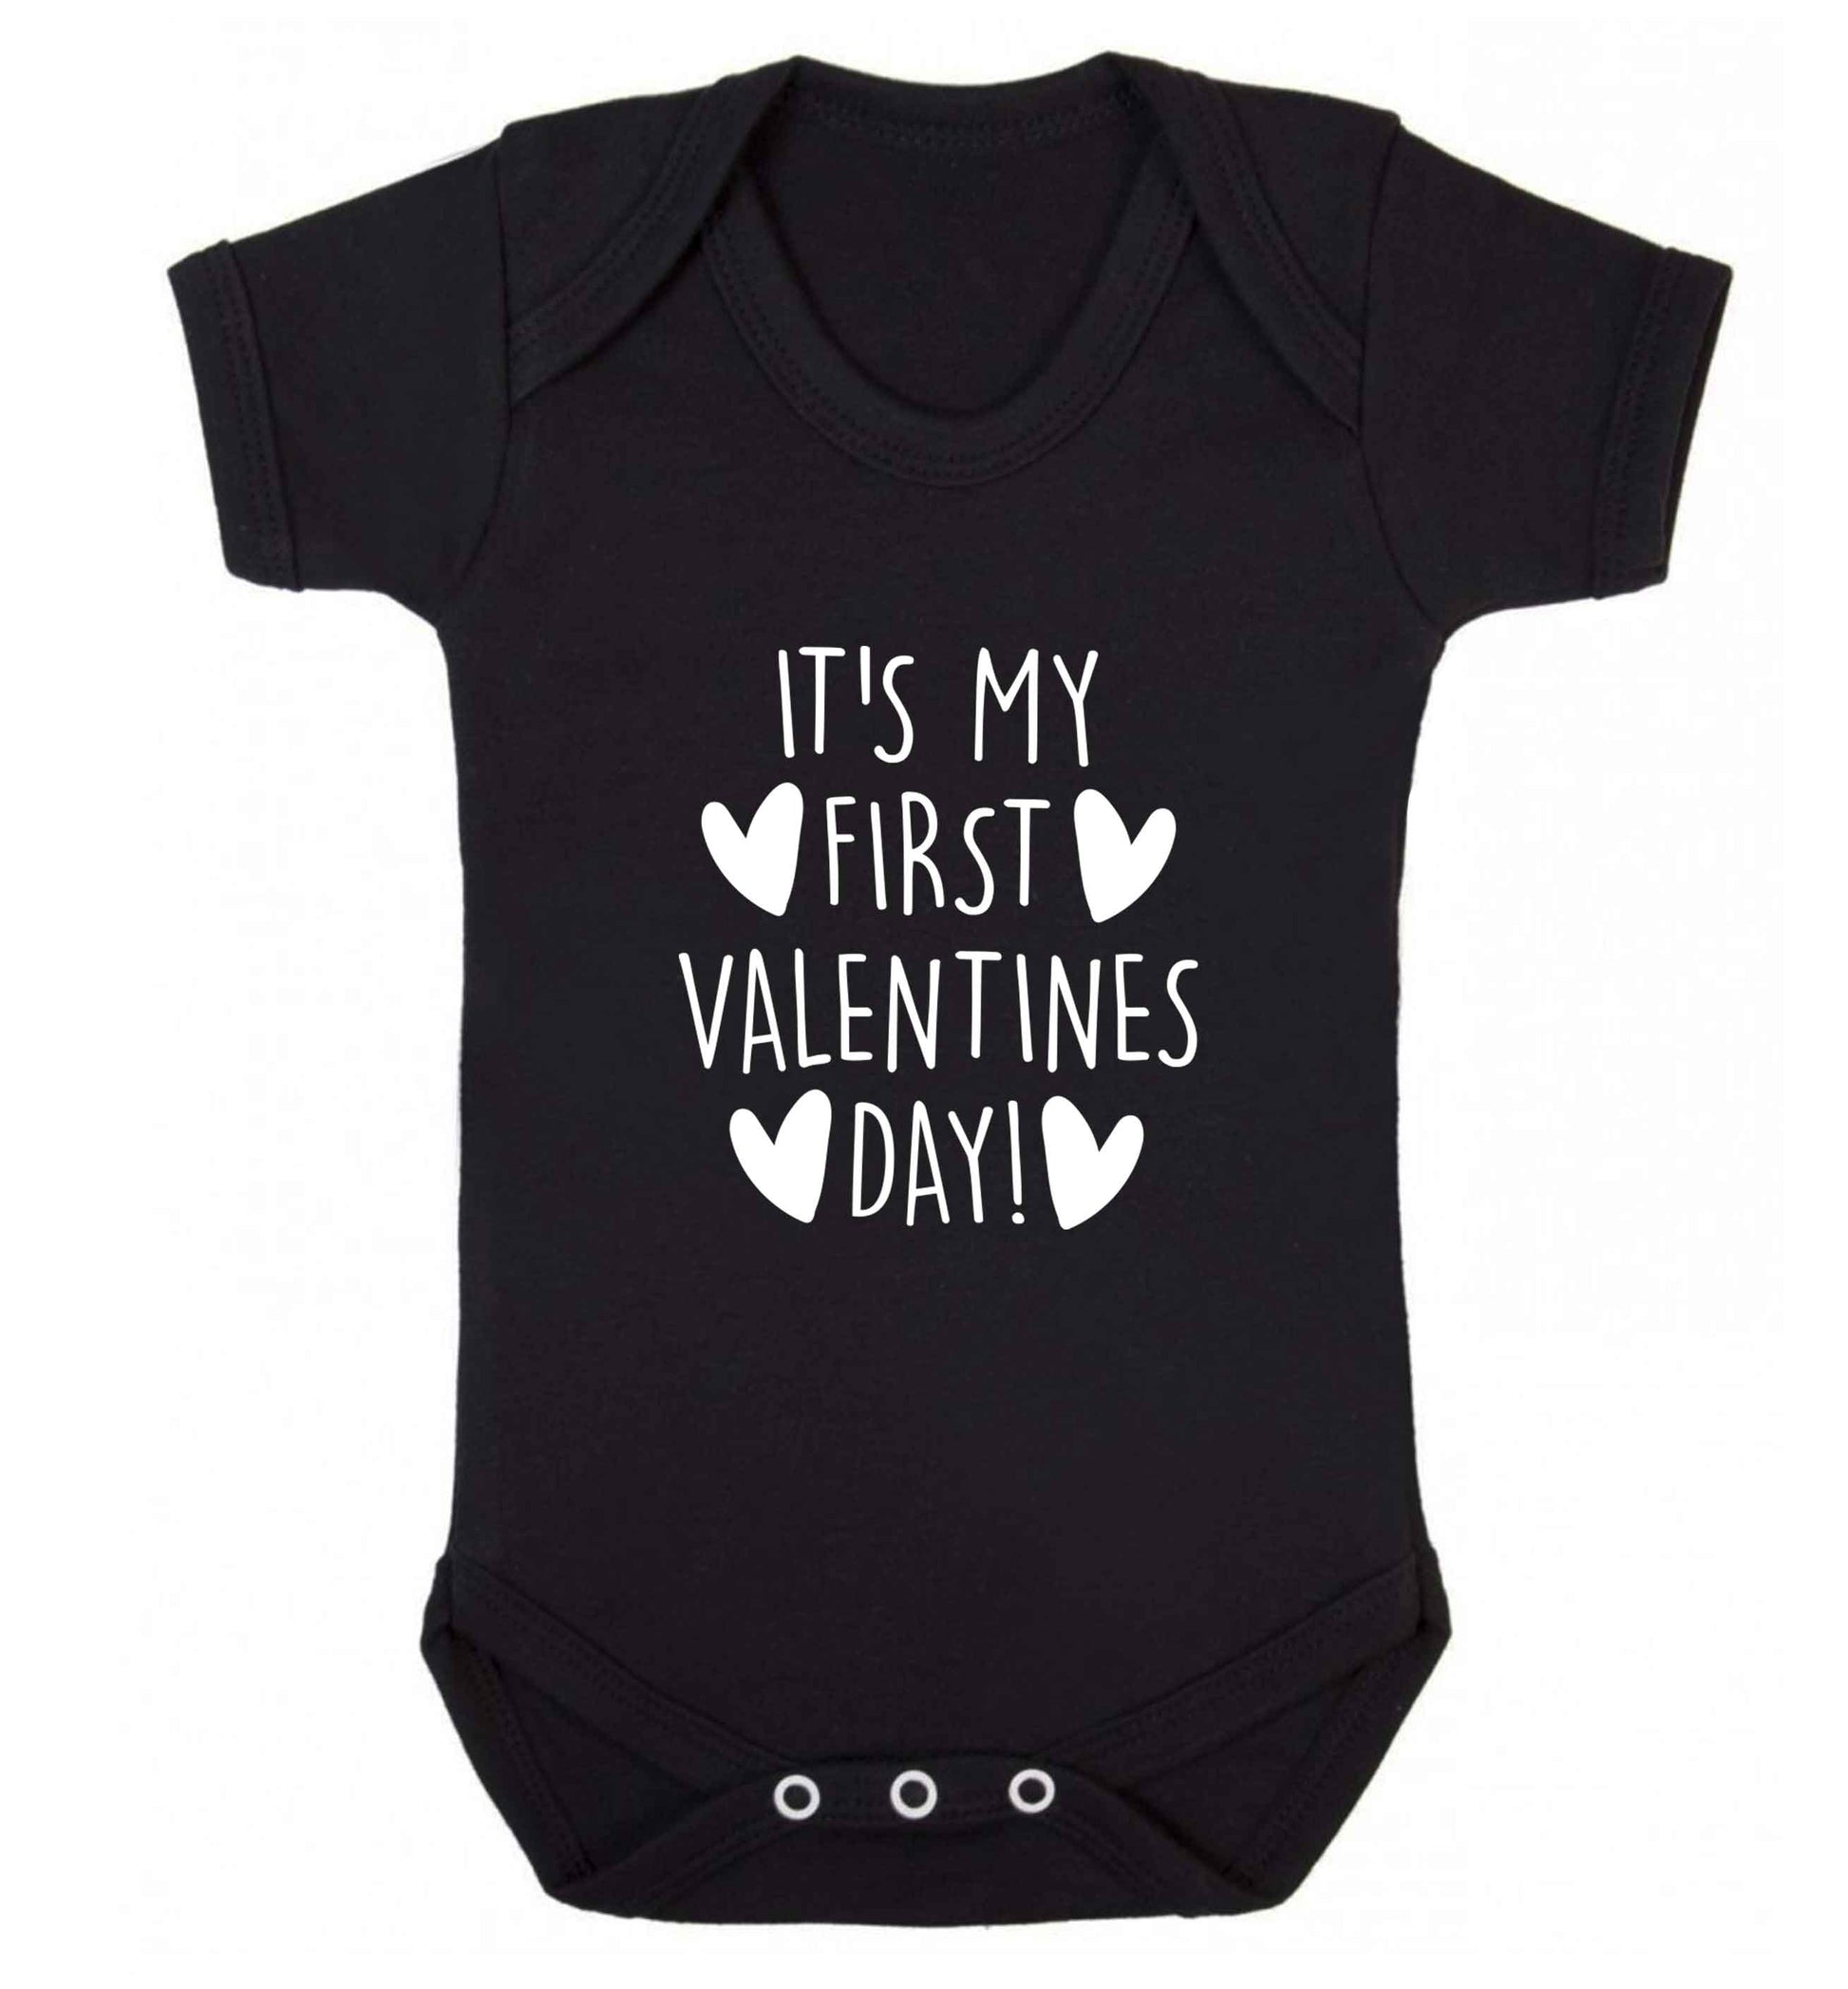 It's my first valentines day! baby vest black 18-24 months